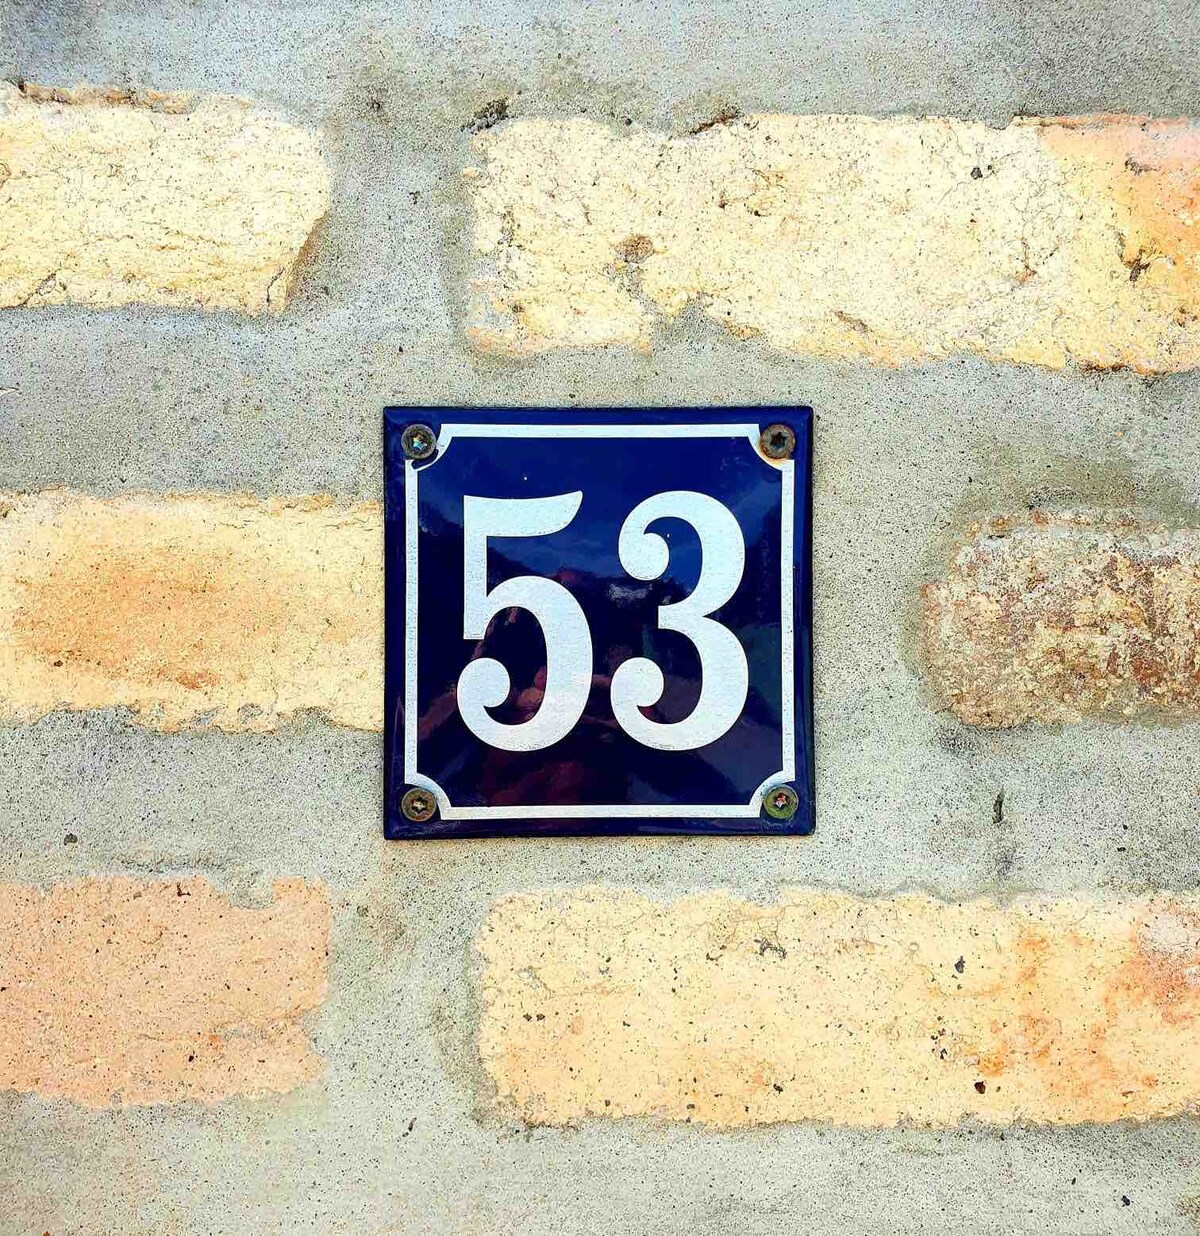 Casa 53